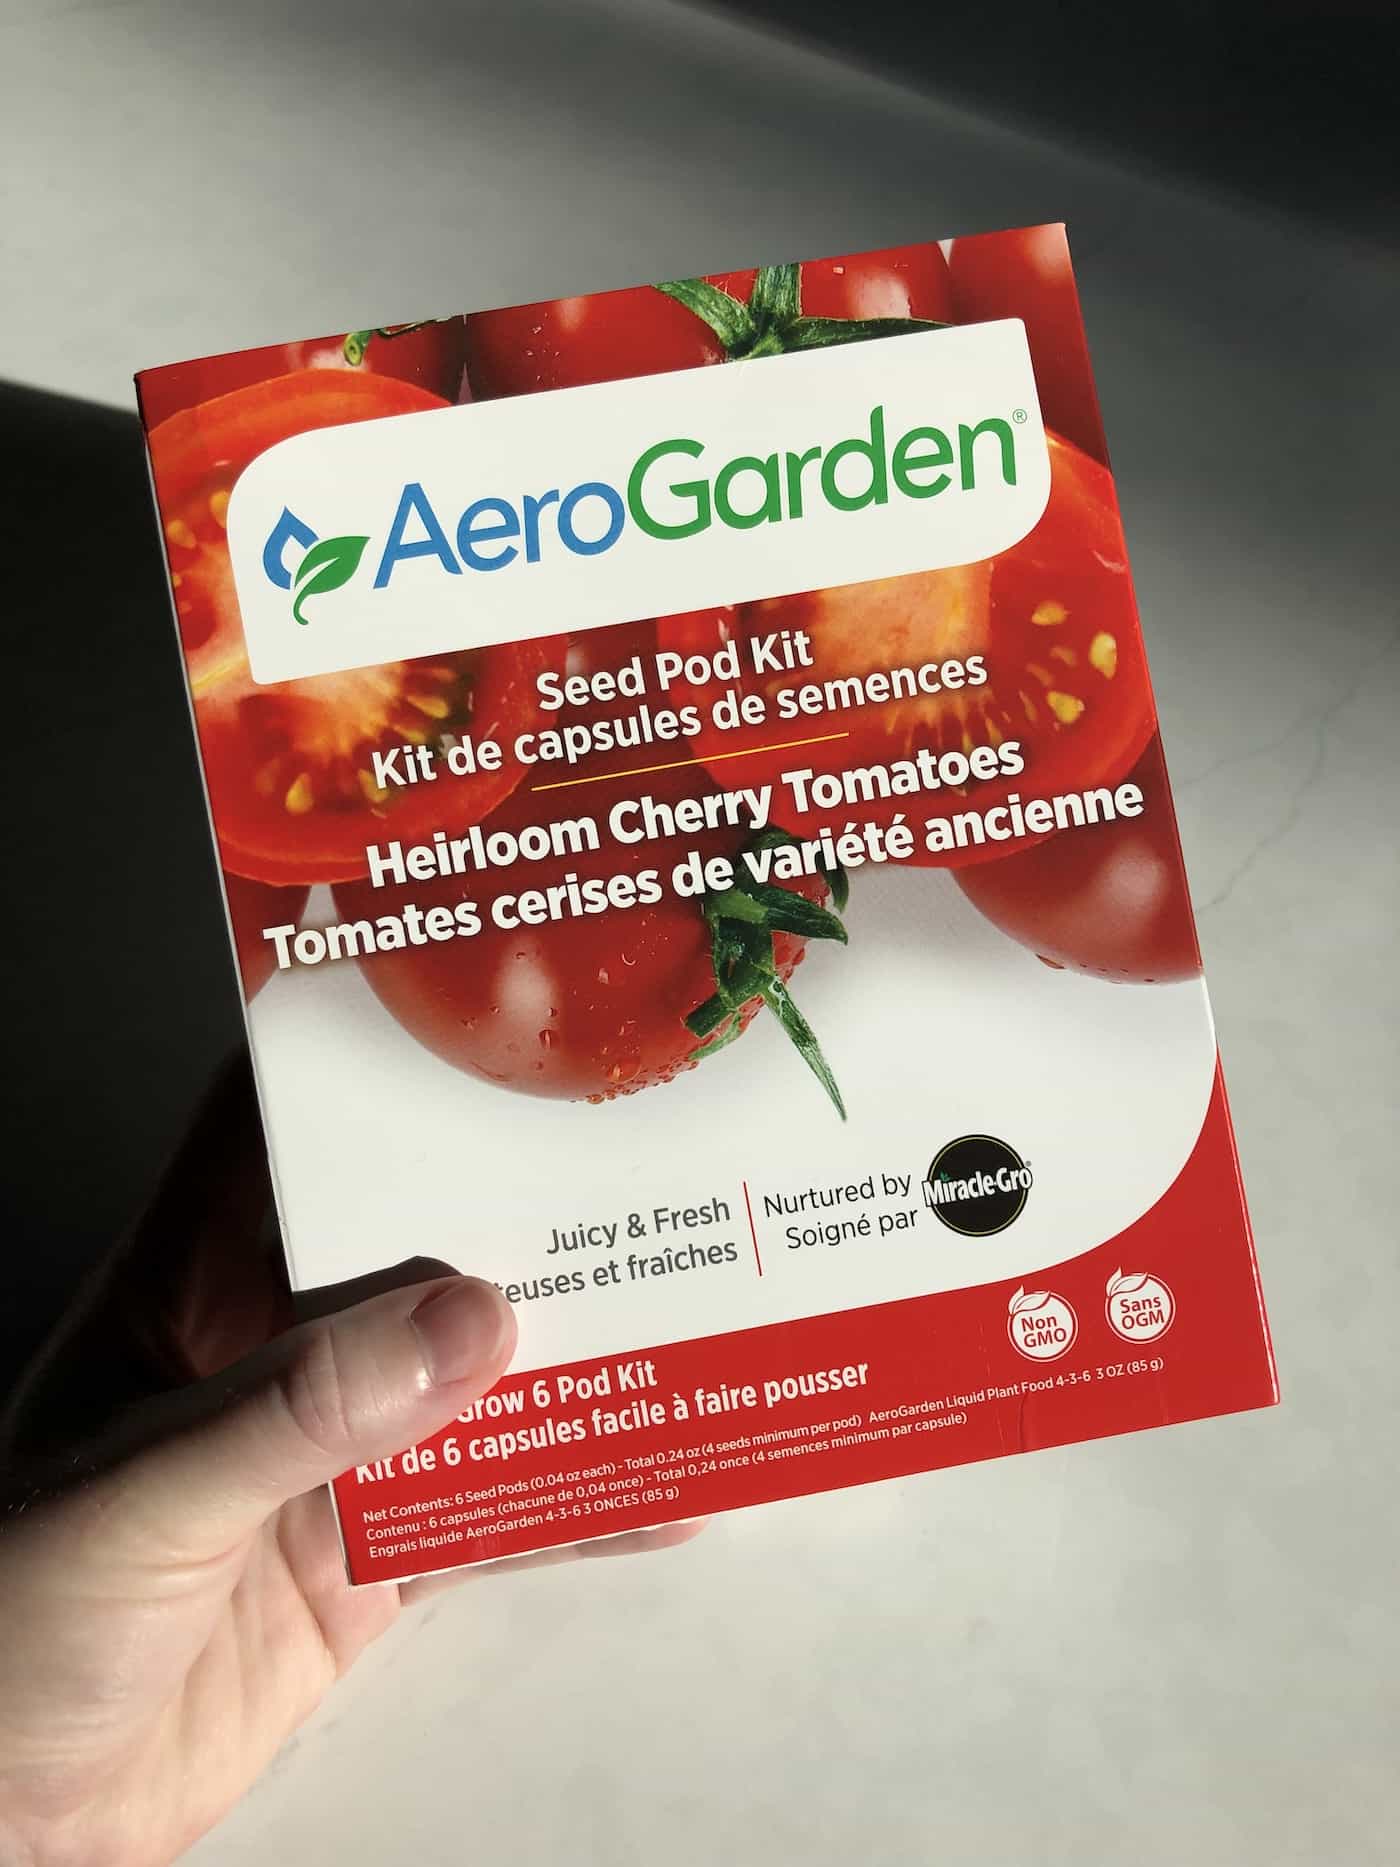 Aerogarden tomatoes - seed pod kit